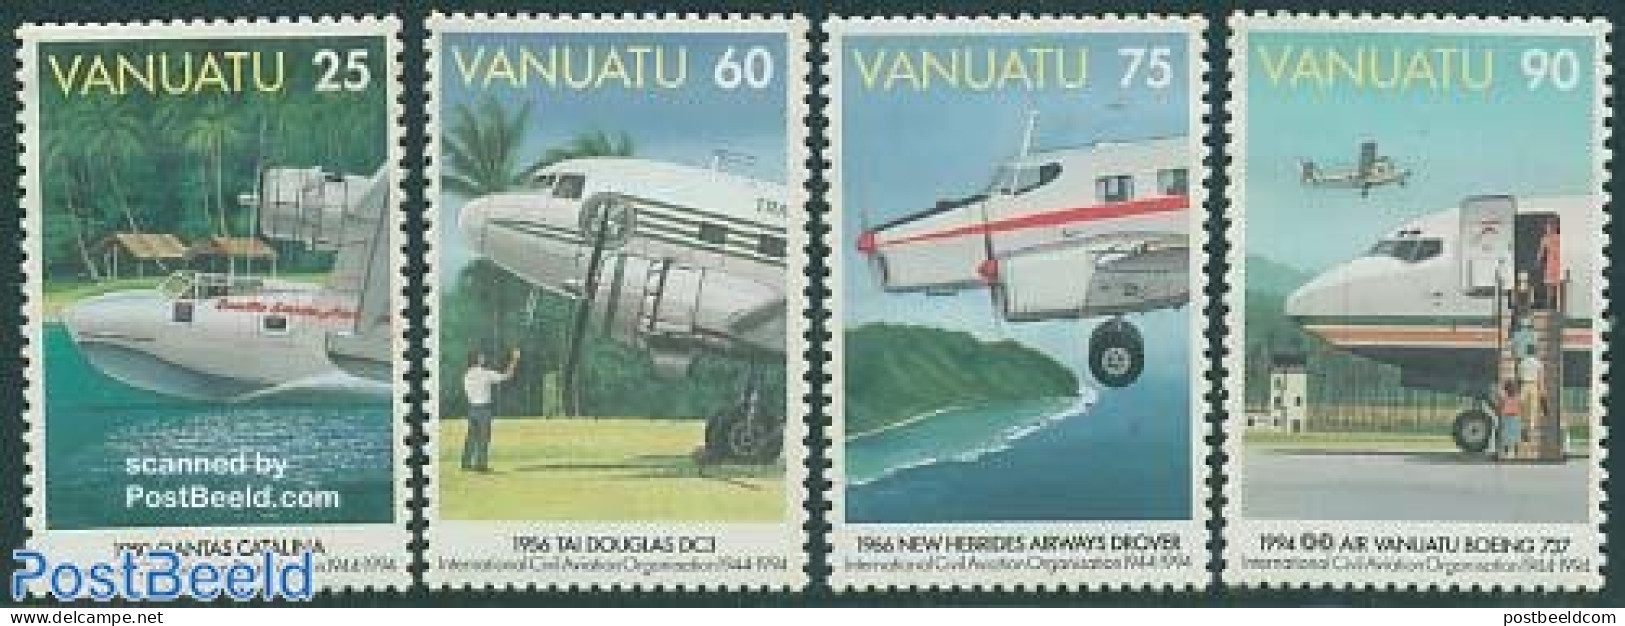 Vanuatu 1994 ICAO 4v, Mint NH, Transport - Aircraft & Aviation - Aviones